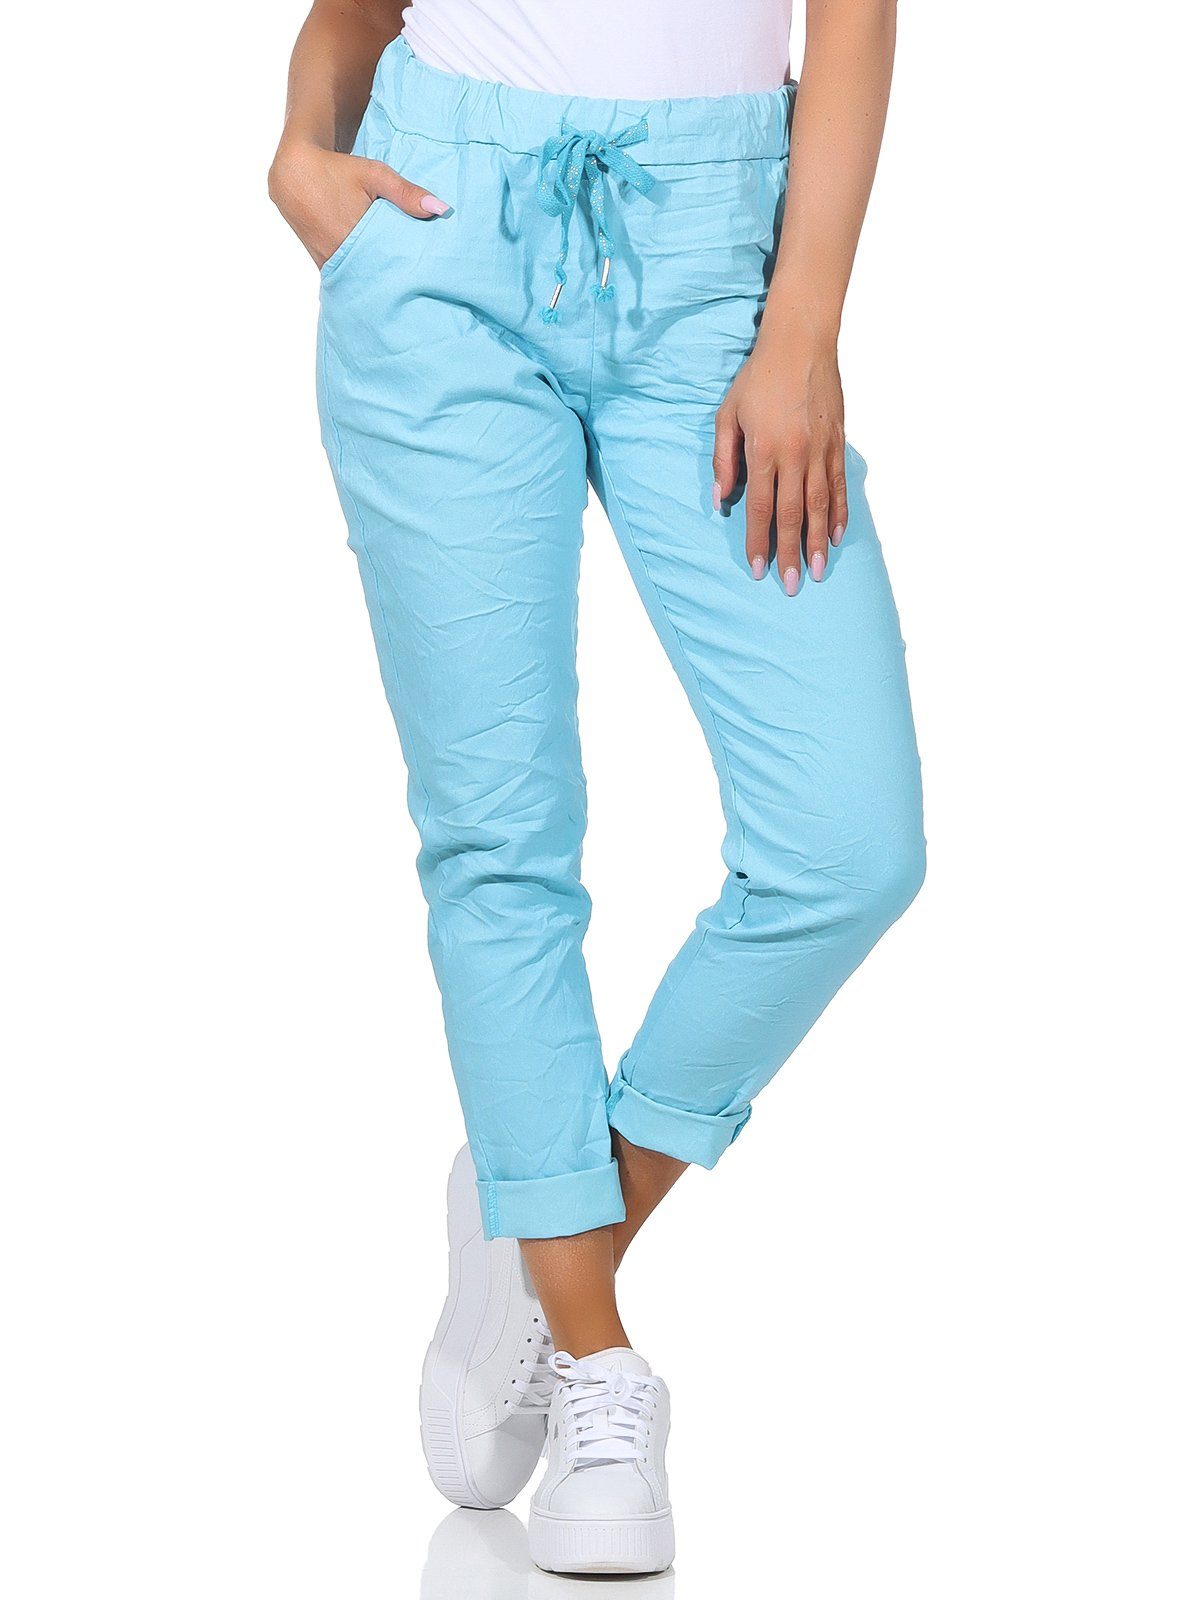 Aurela Damenmode Schlupfhose Sommerhose Damen Chinohose leichte Schlupfhose auch in großen Größen erhältlich, Stretch-Jeans in modischen Sommerfarben, max. Körpergröße 1,69m Türkis